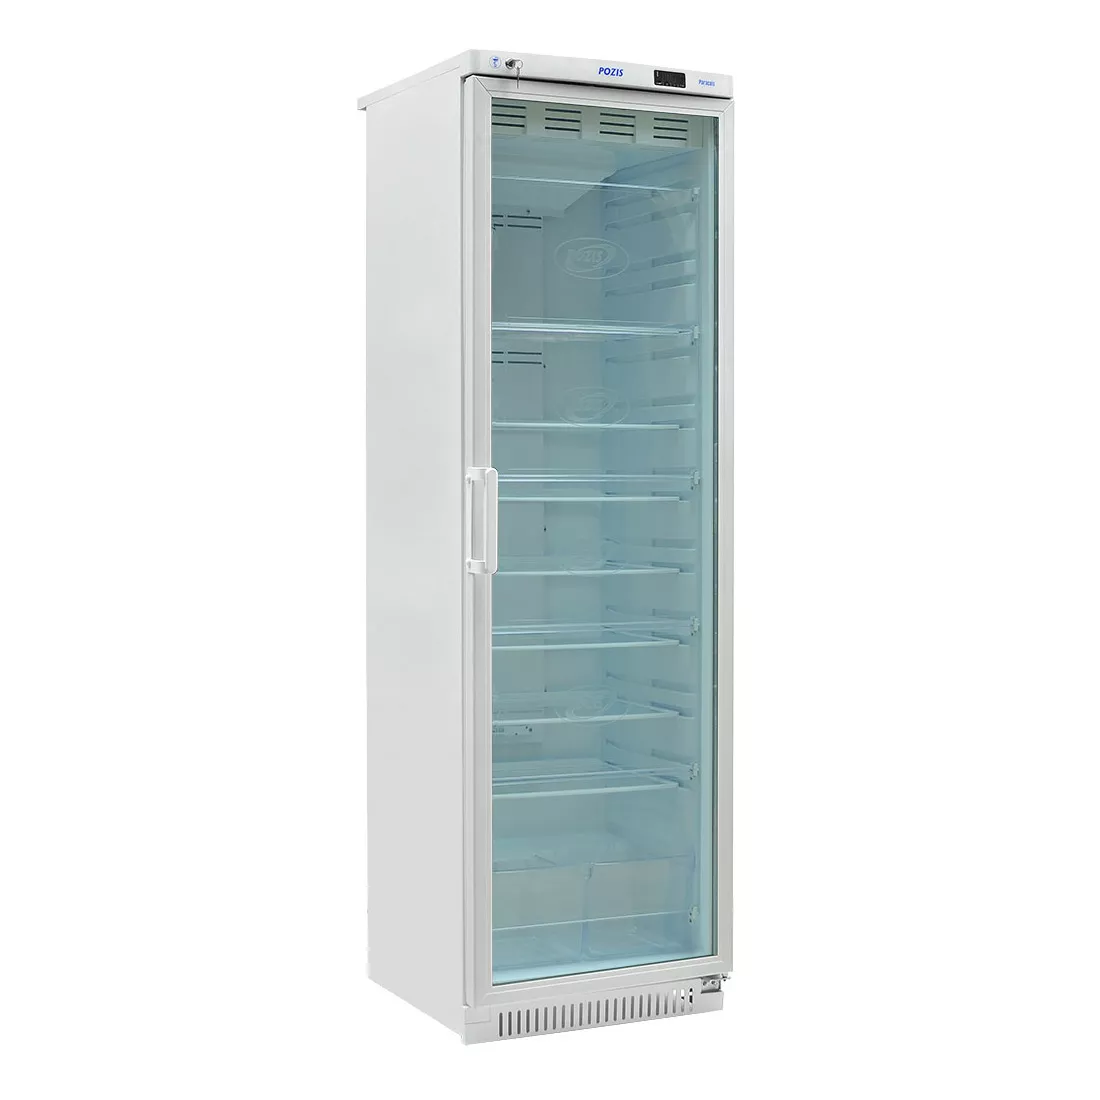 POZIS ХФ-400-3 - холодильник фармацевтический, прозрачная дверь, объем 400 л